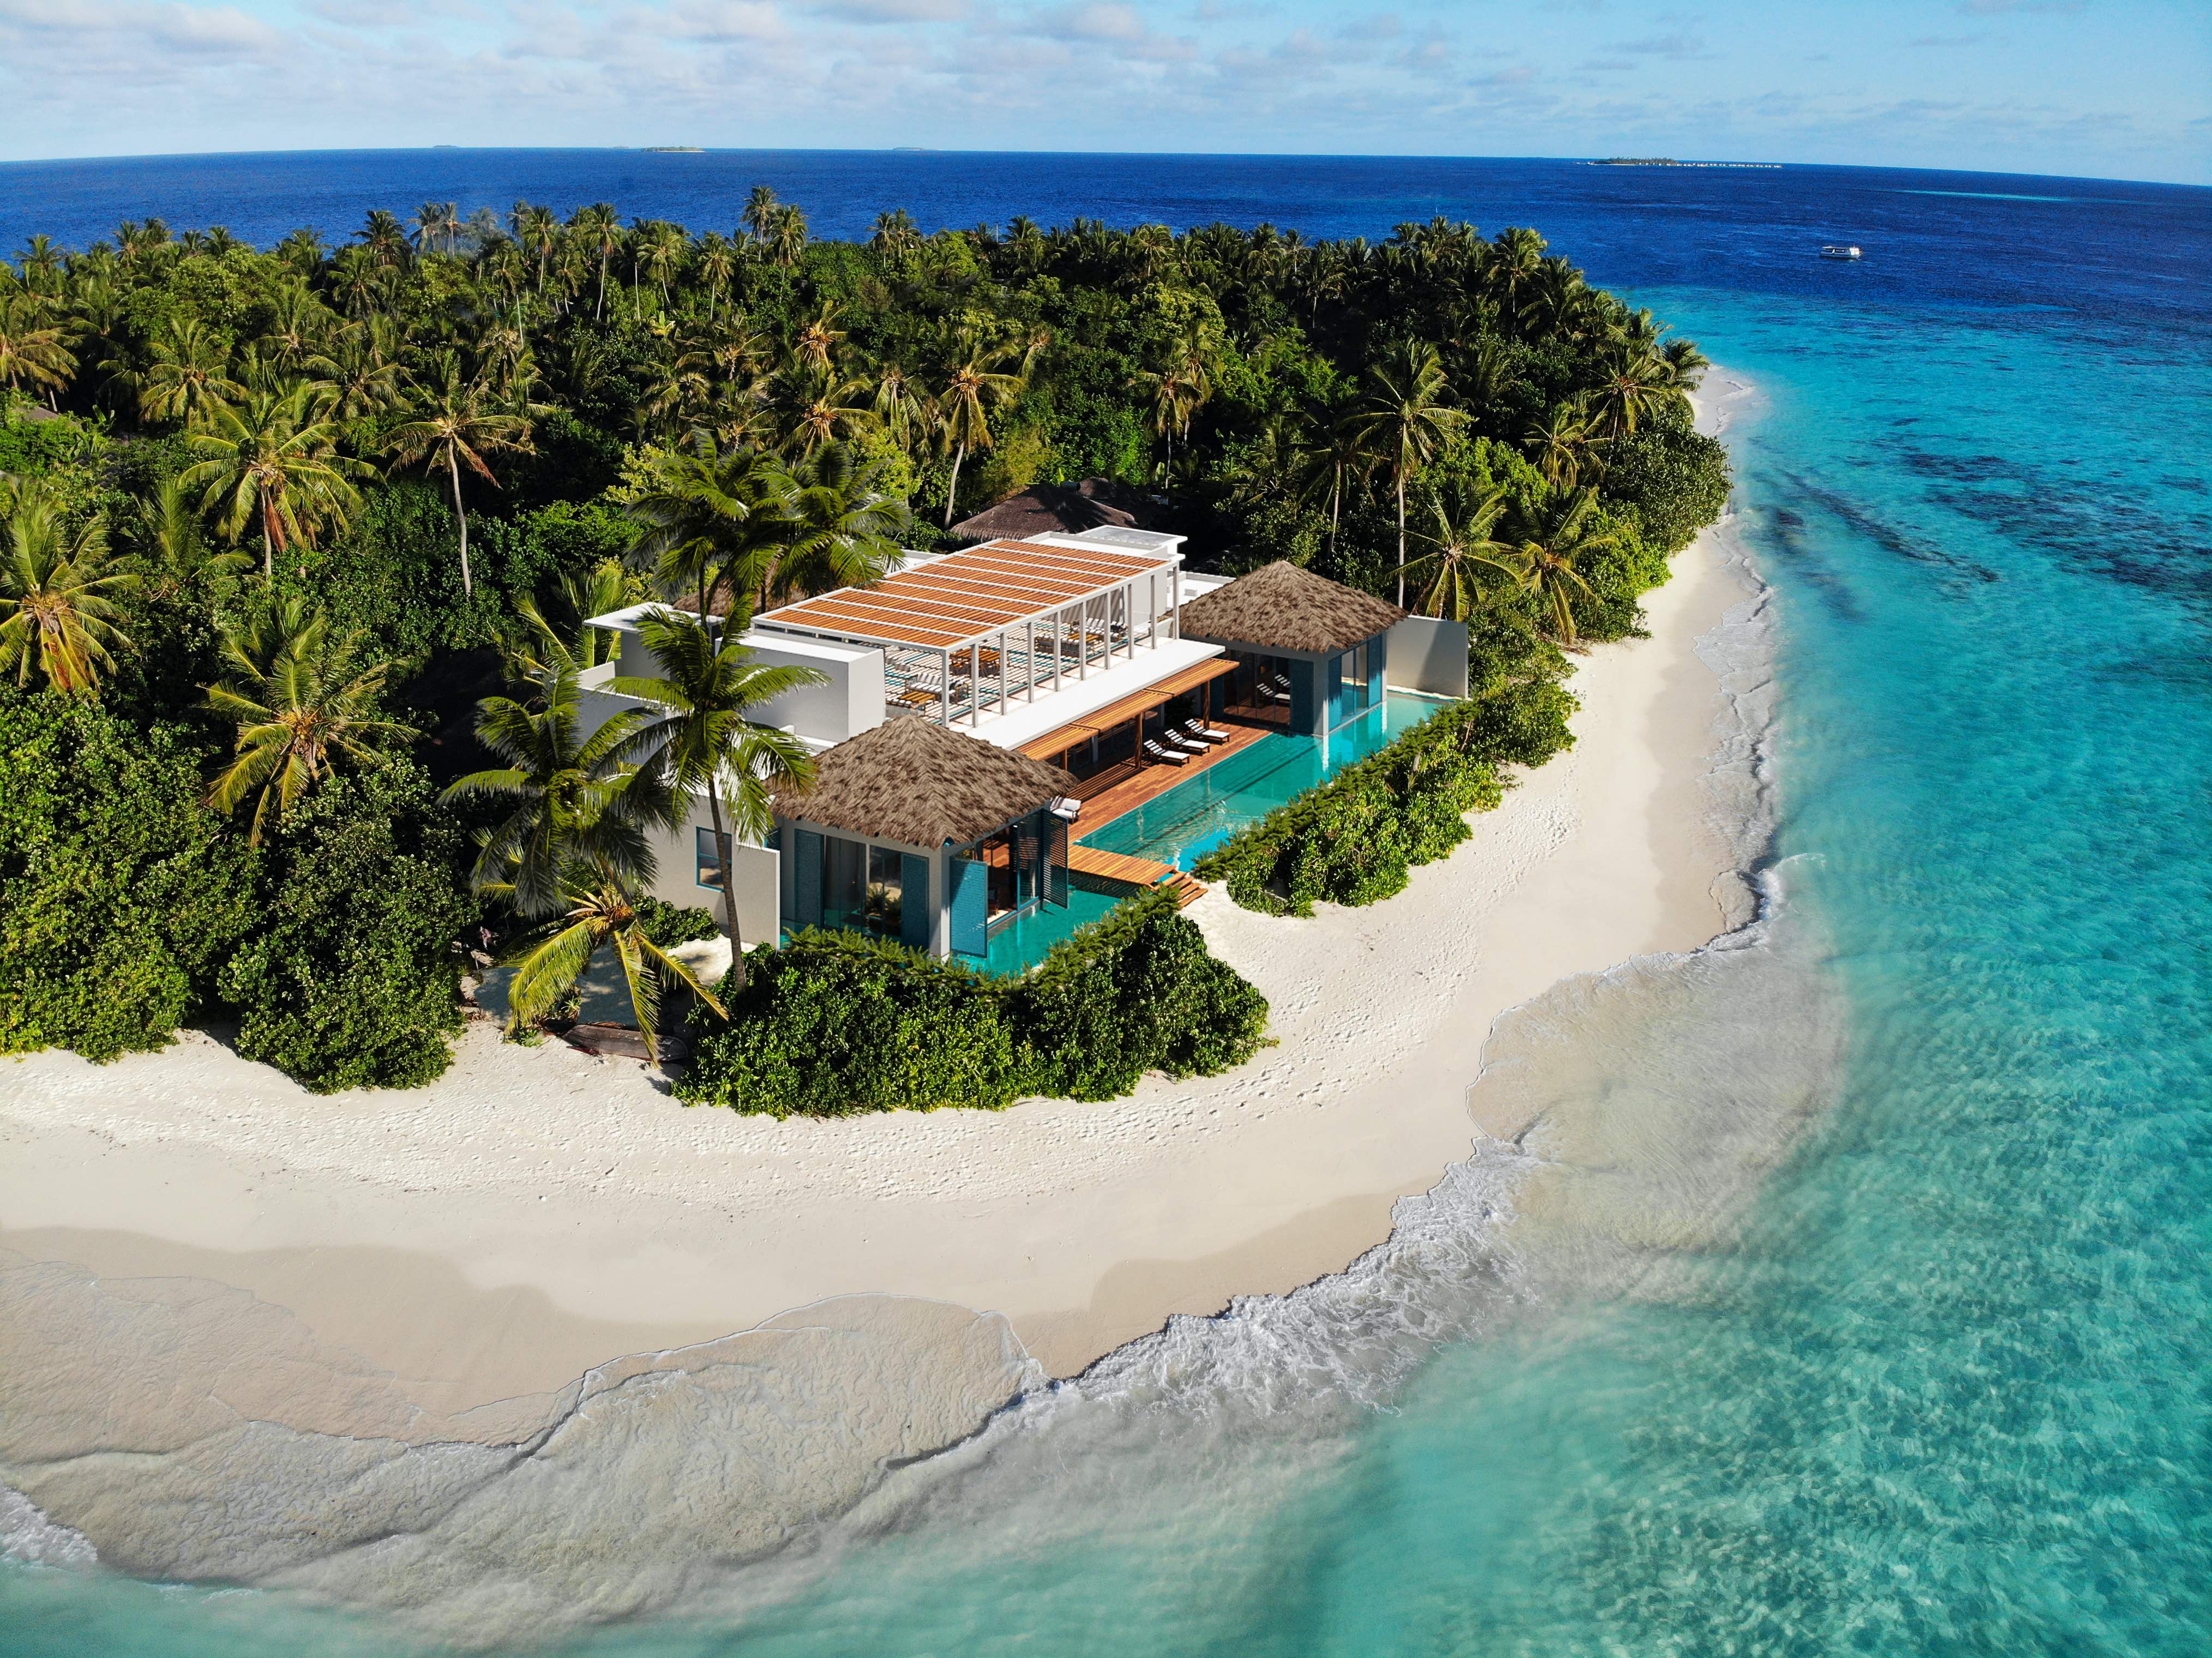 Королевская вилла, морские дворецкие и забота об экологии на роскошном курорте Мальдив (фото 3)